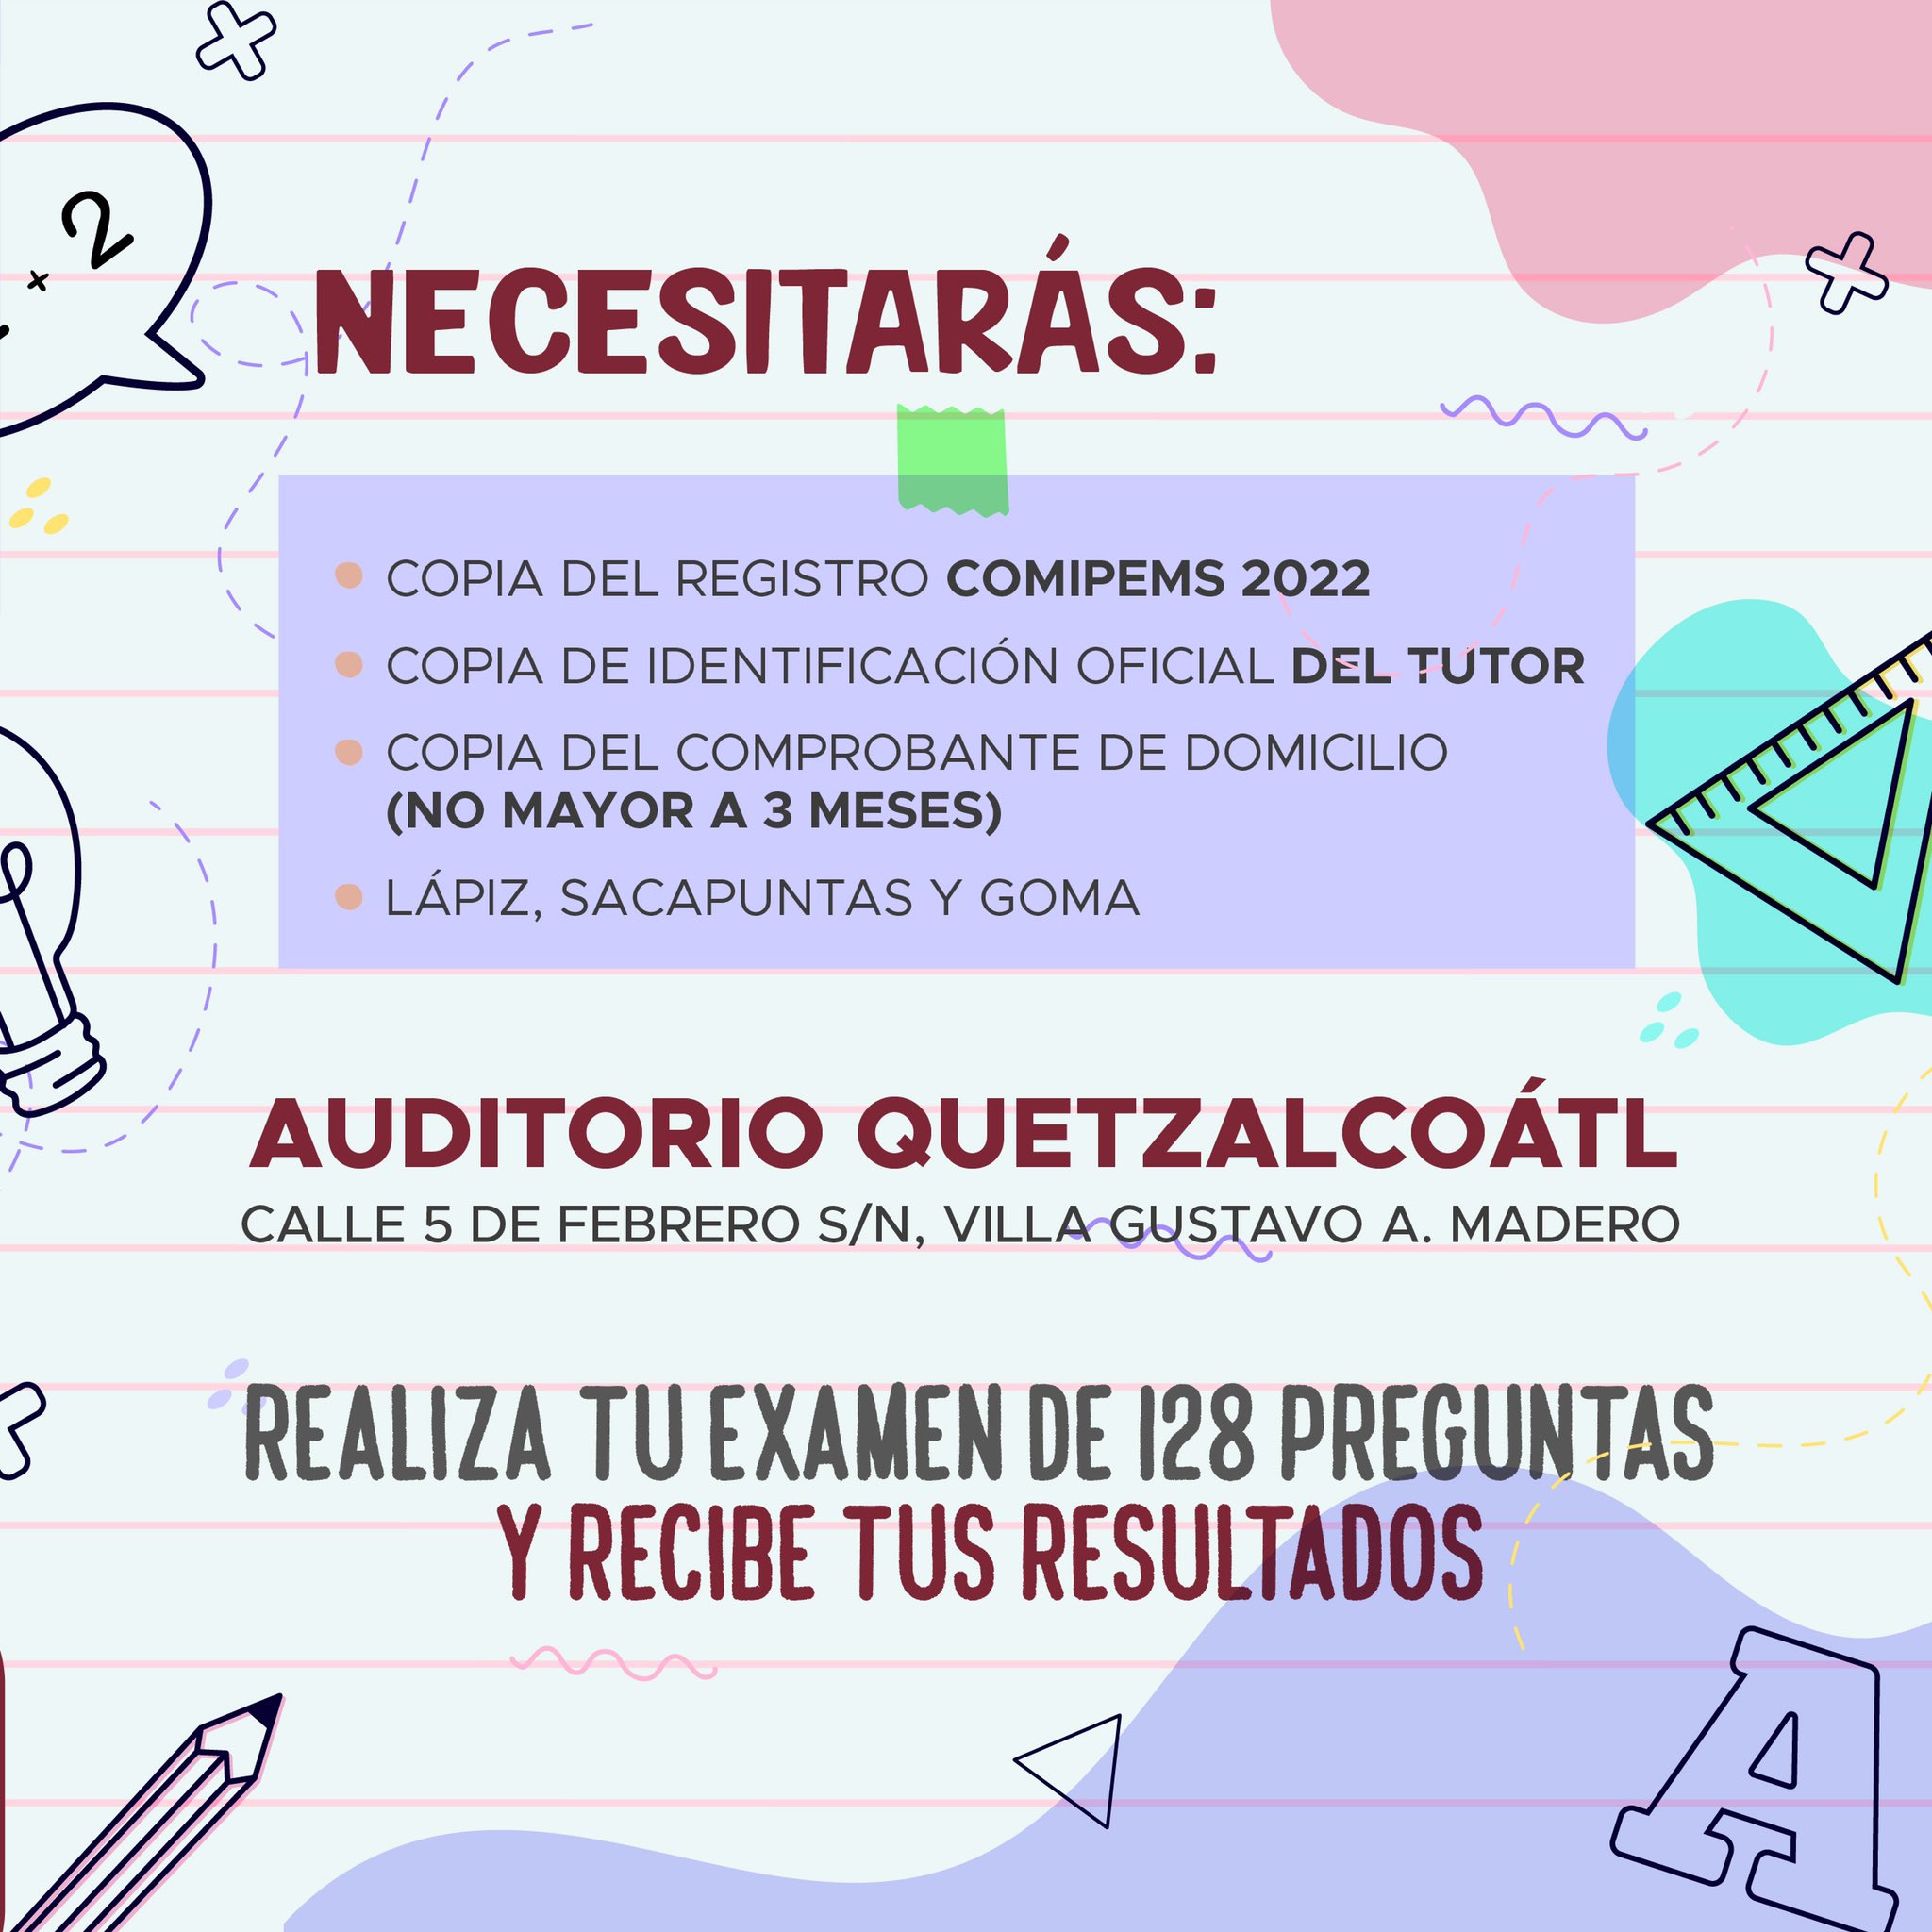 Estos son los requisitos para el examen Foto: Twitter Alcaldía GAM 